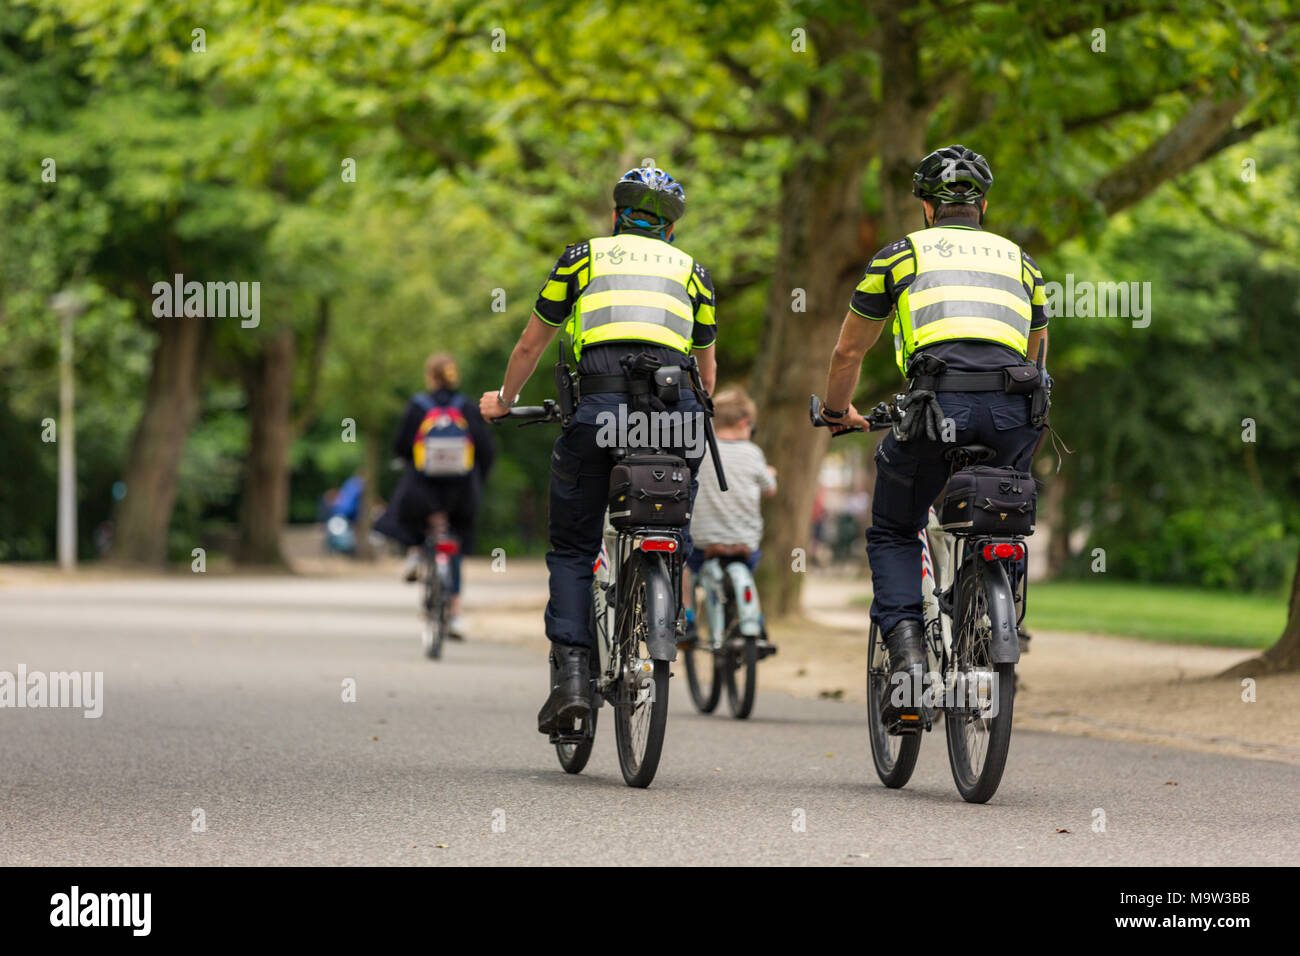 La policía de bikepatrol en Amsterdam Vondelpark en los Países Bajos. Foto de stock